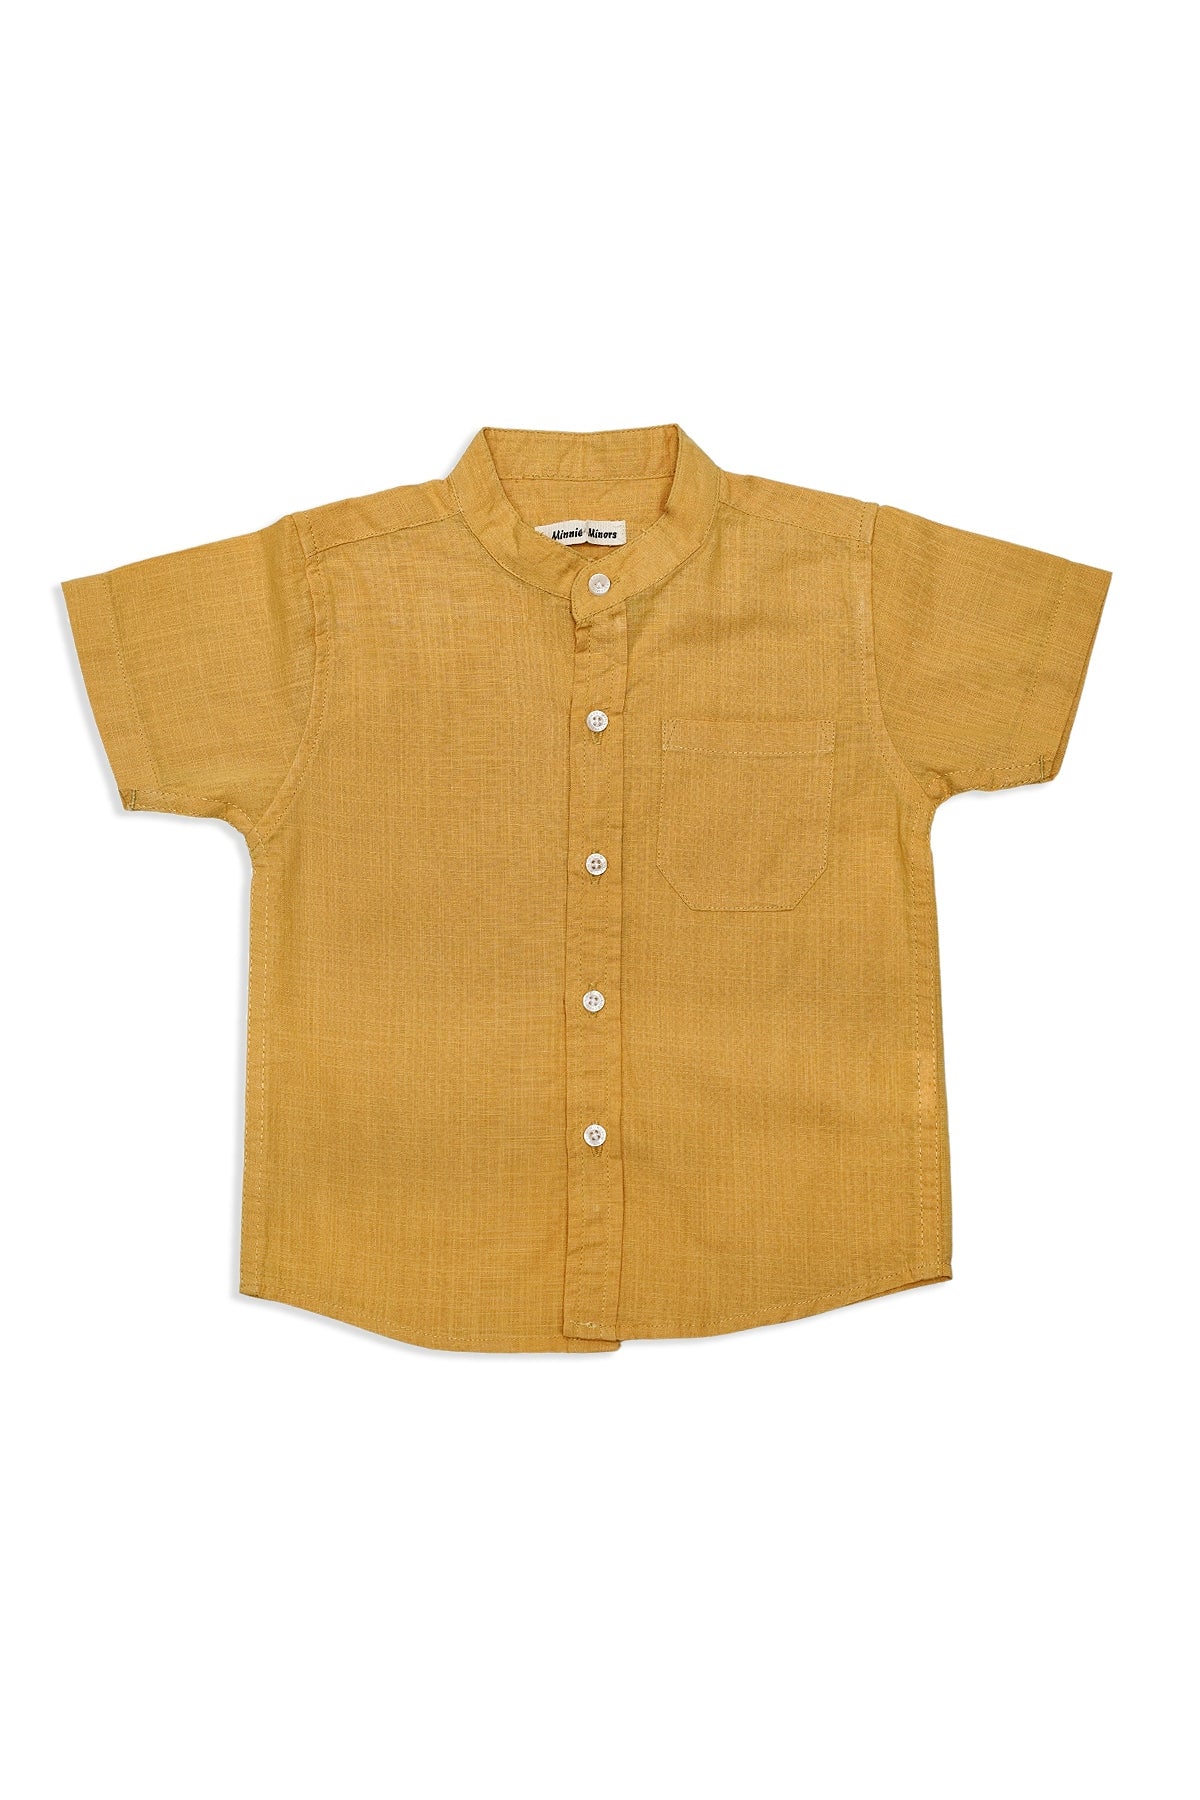 Shirt (ITTSS-029A)